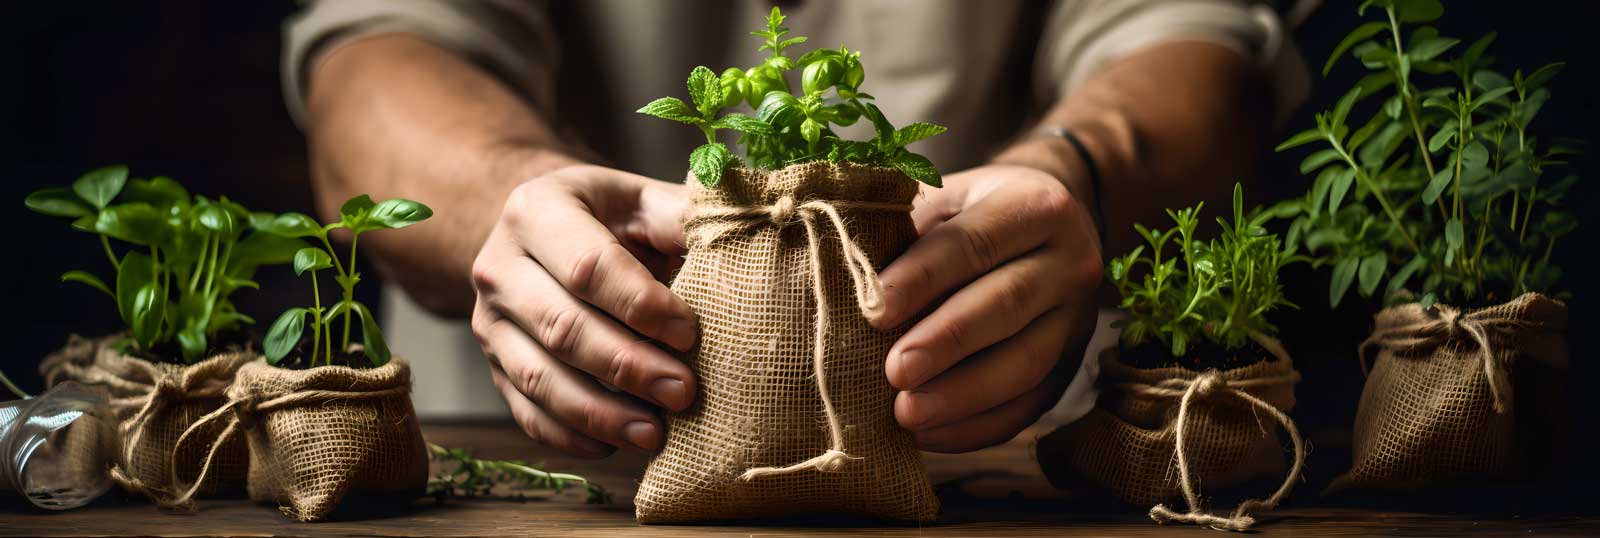 Growing Seedlings Header | Seedmart